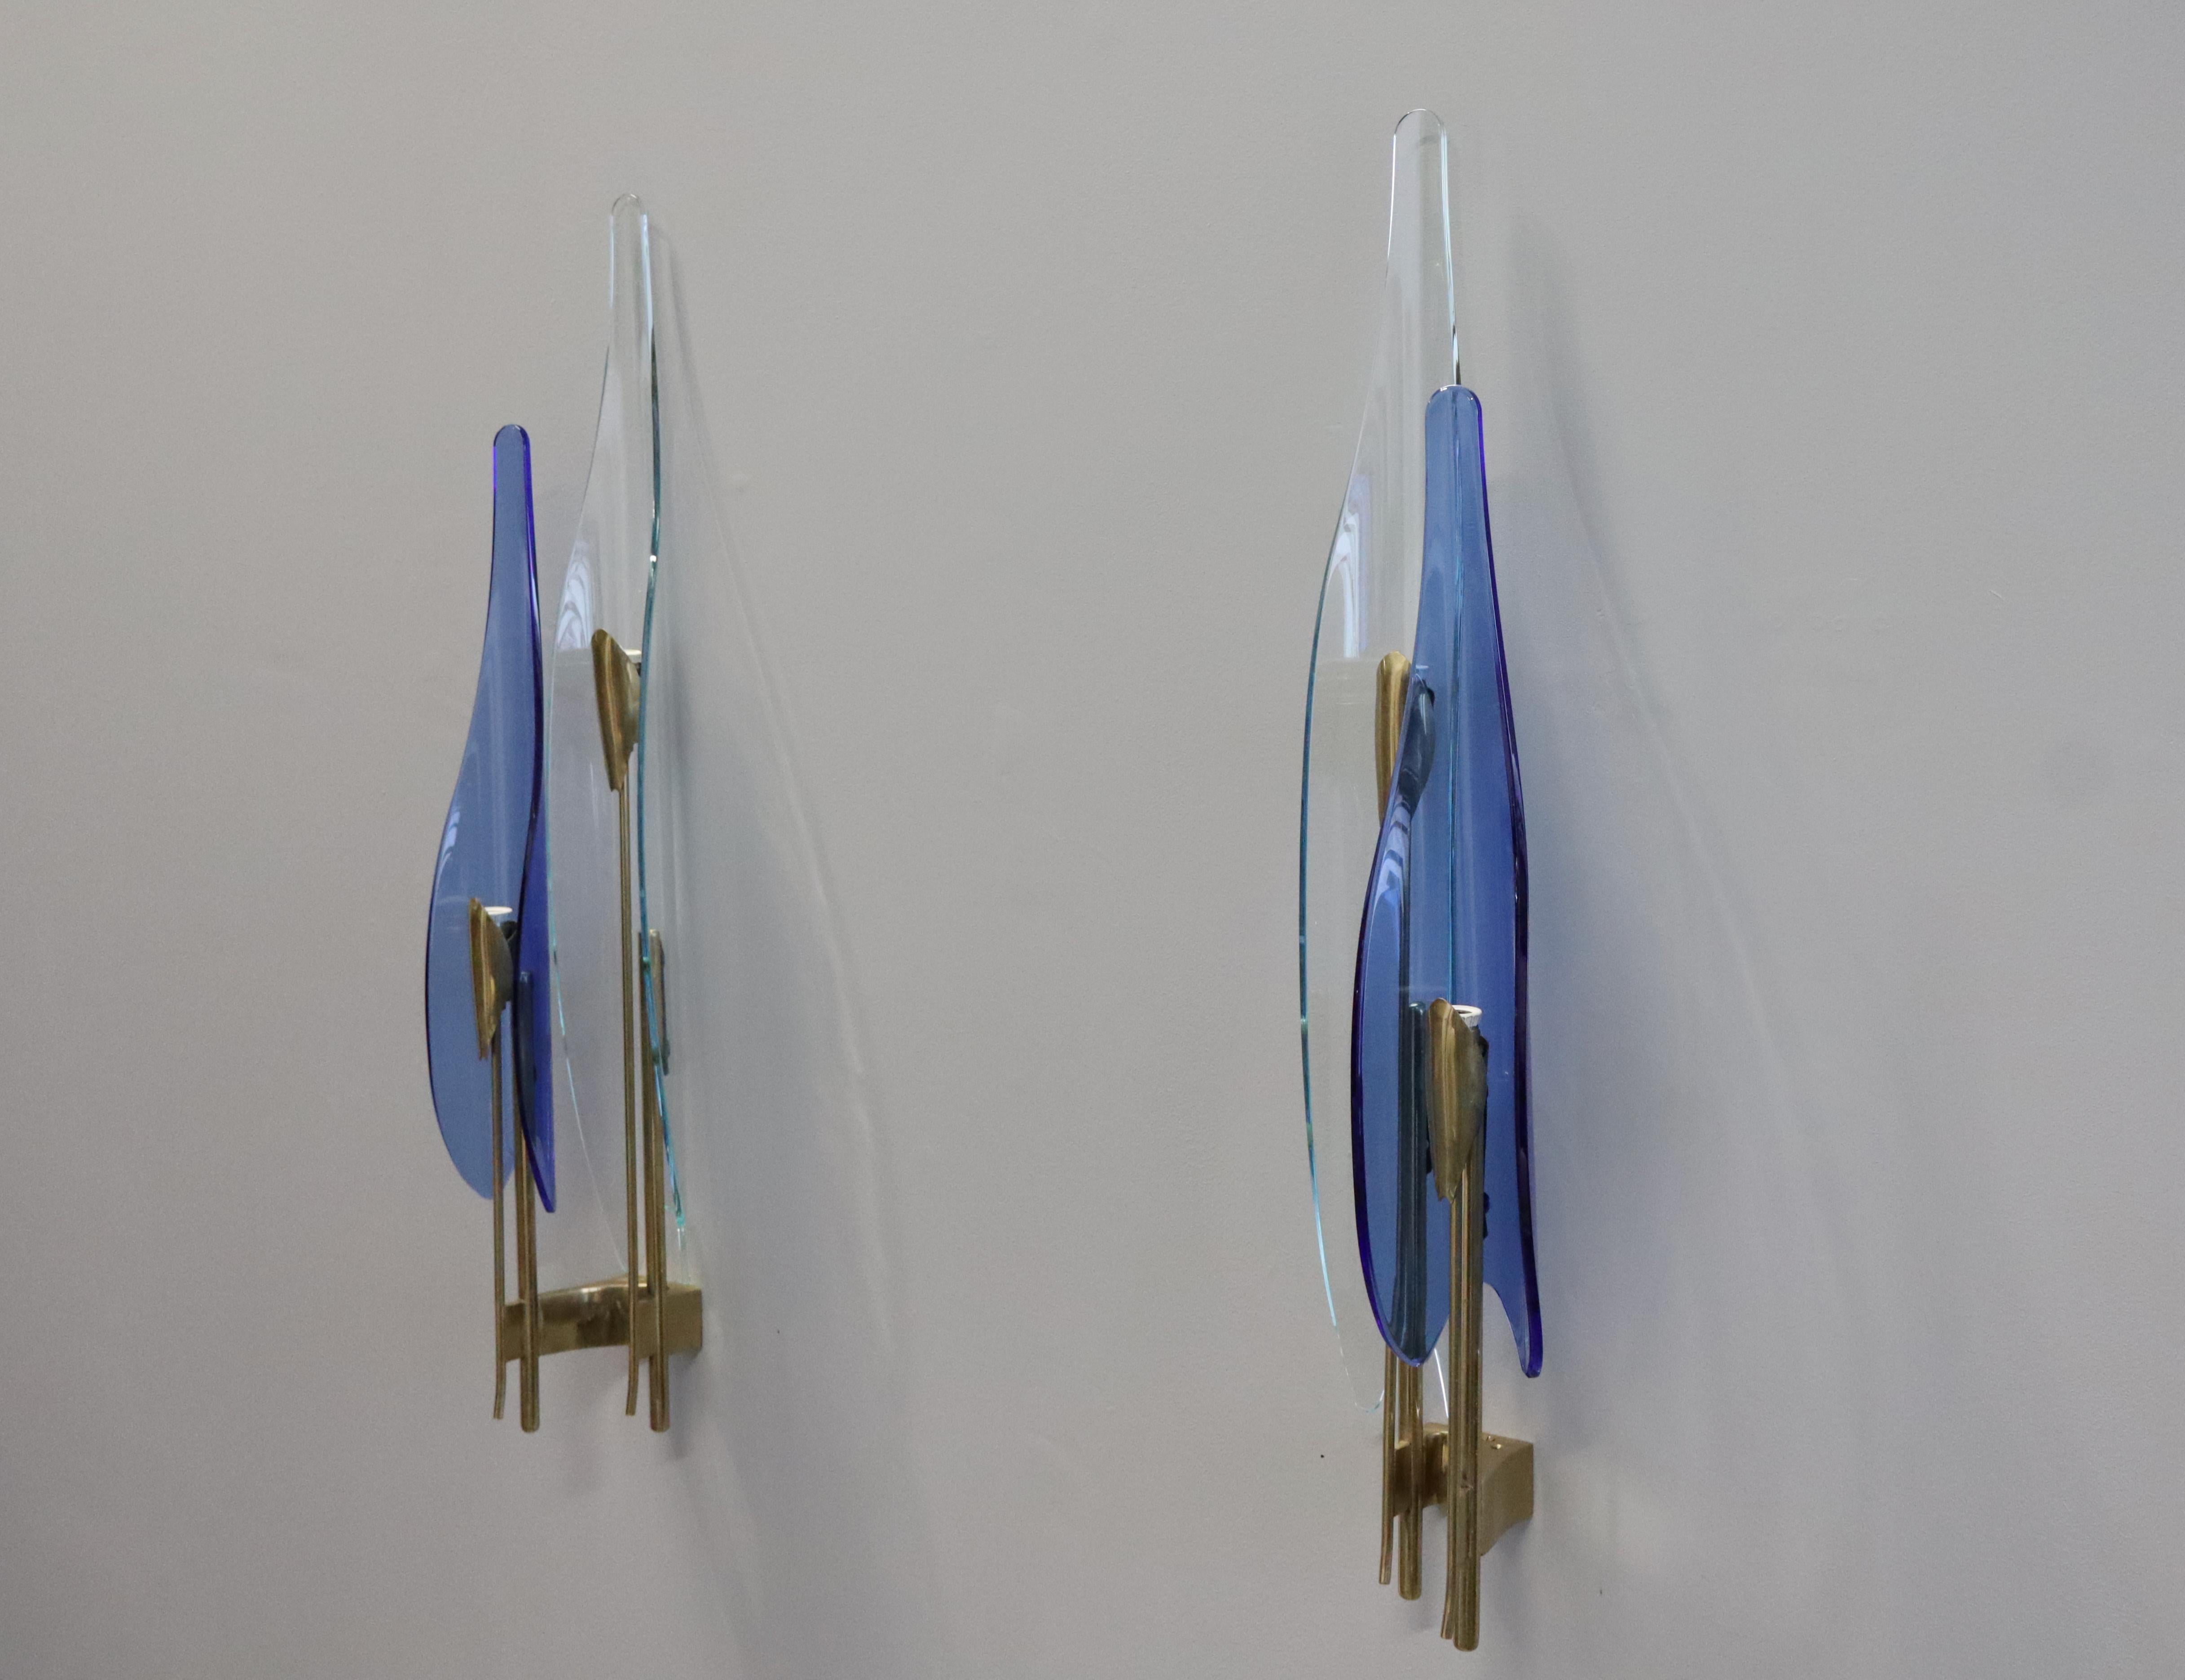 Quattro applique 'Dahlia' di Max Ingrand per Fontana Arte. Model #1461. 
Questo modello include un raro vetro blu e un vetro trasparente. 
Le appliques sono nelle loro condizioni originali. Non è stato effettuato alcun restauro. Tutte le parti sono